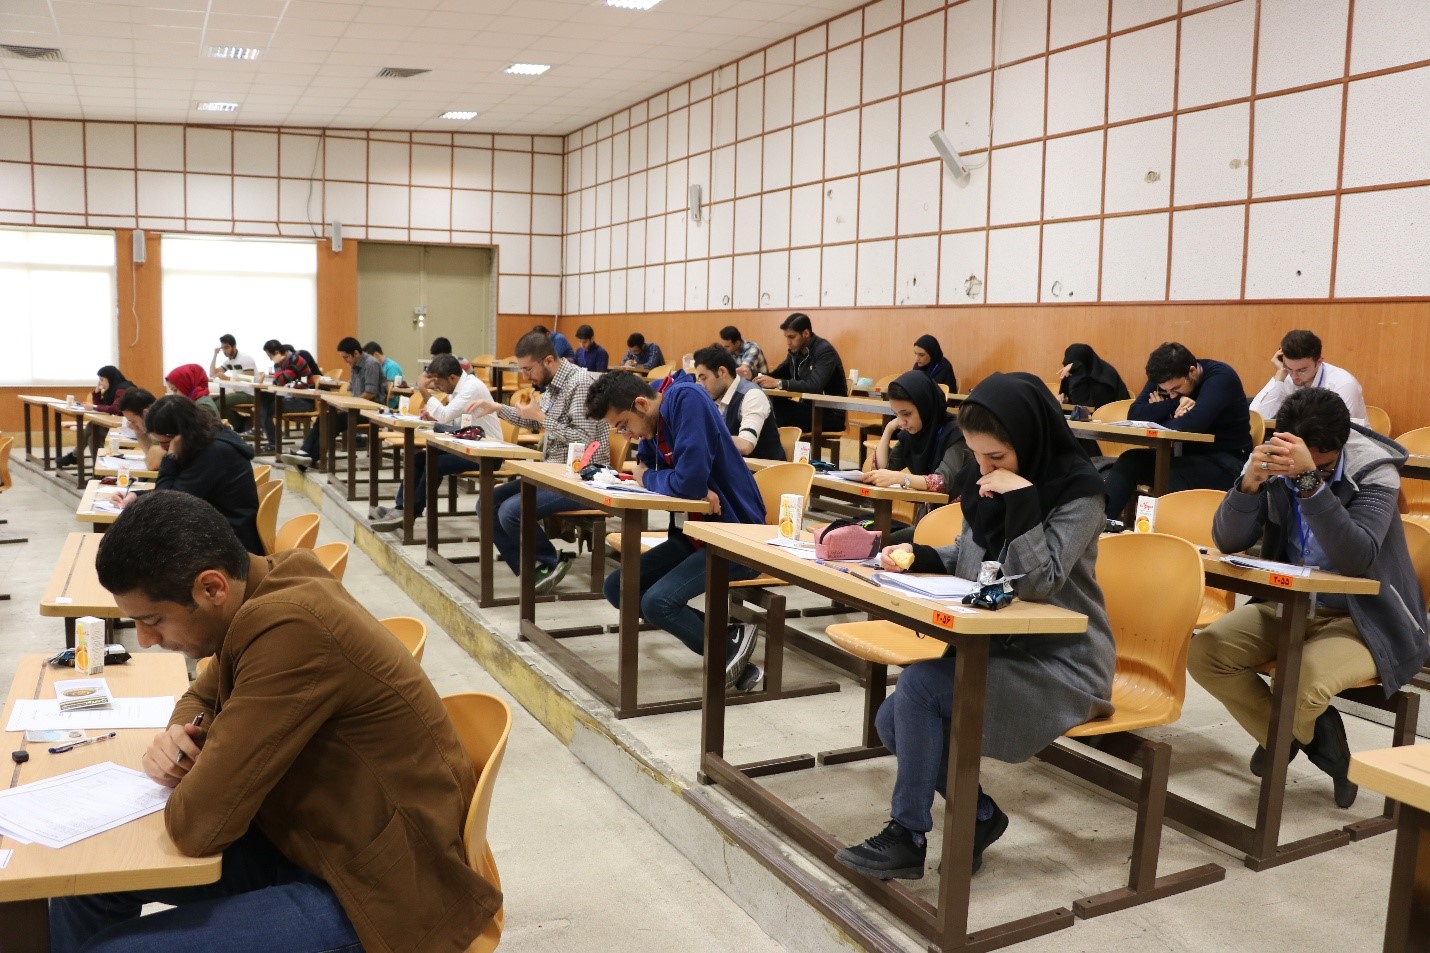 ششمین آزمون جاواکاپ در دانشگاه شهید بهشتی